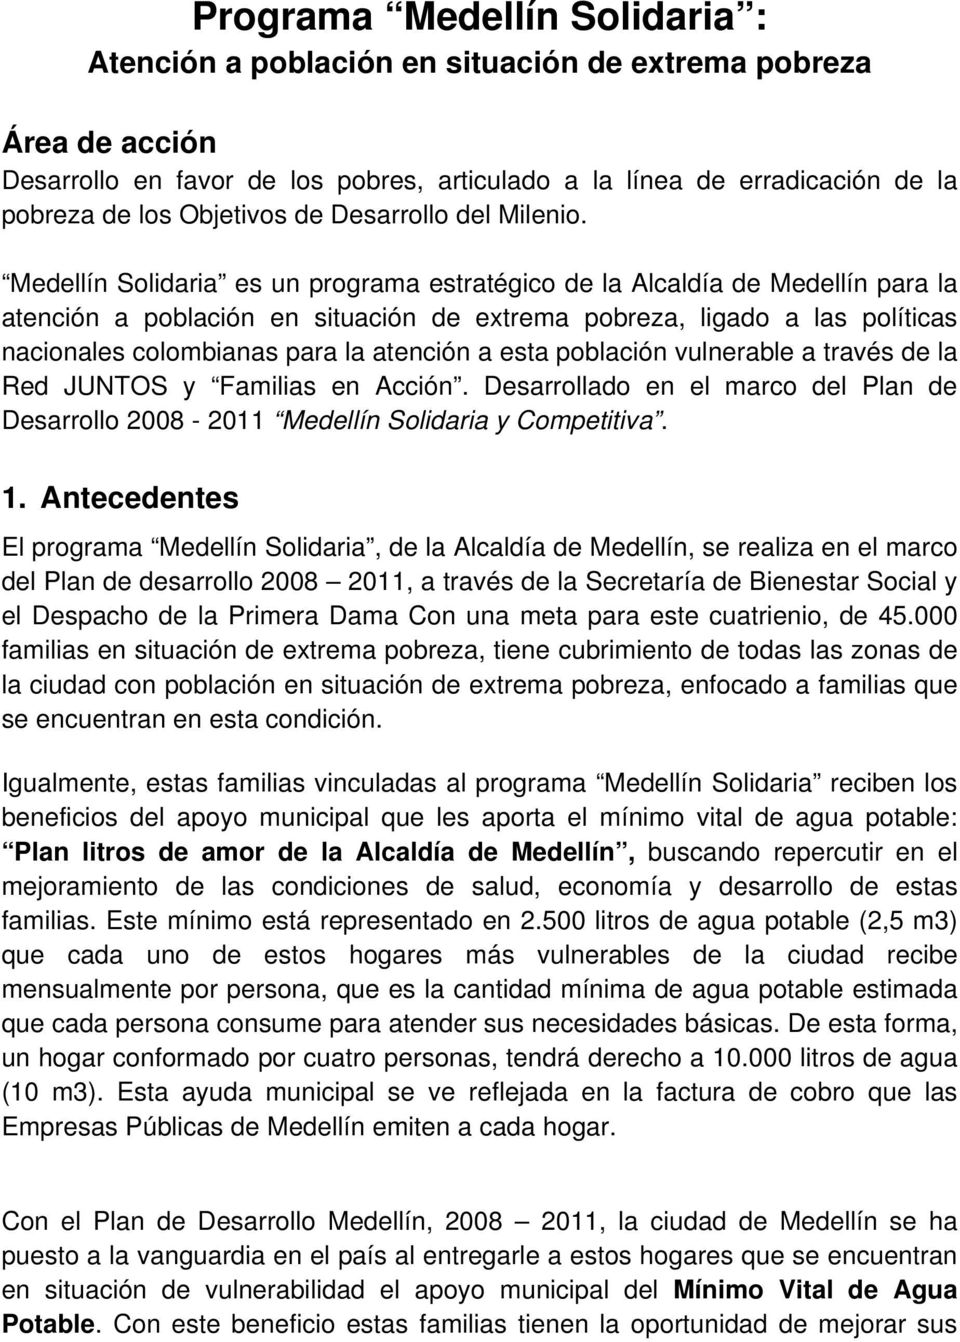 Medellín Solidaria es un programa estratégico de la Alcaldía de Medellín para la atención a población en situación de extrema pobreza, ligado a las políticas nacionales colombianas para la atención a